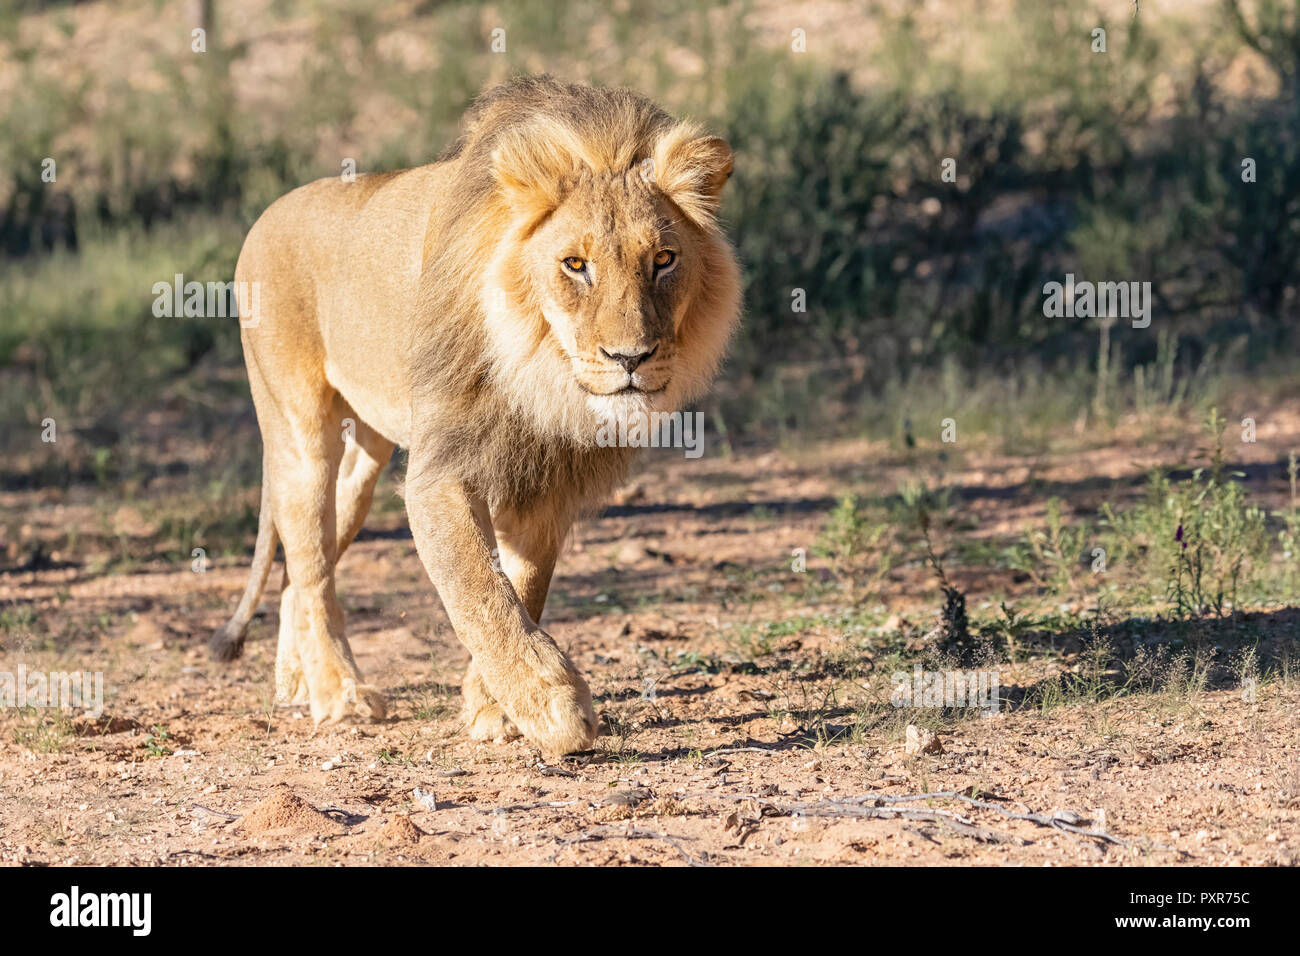 Le Botswana, Kgalagadi Transfrontier Park, lion, Panthera leo, randonnée pédestre Banque D'Images